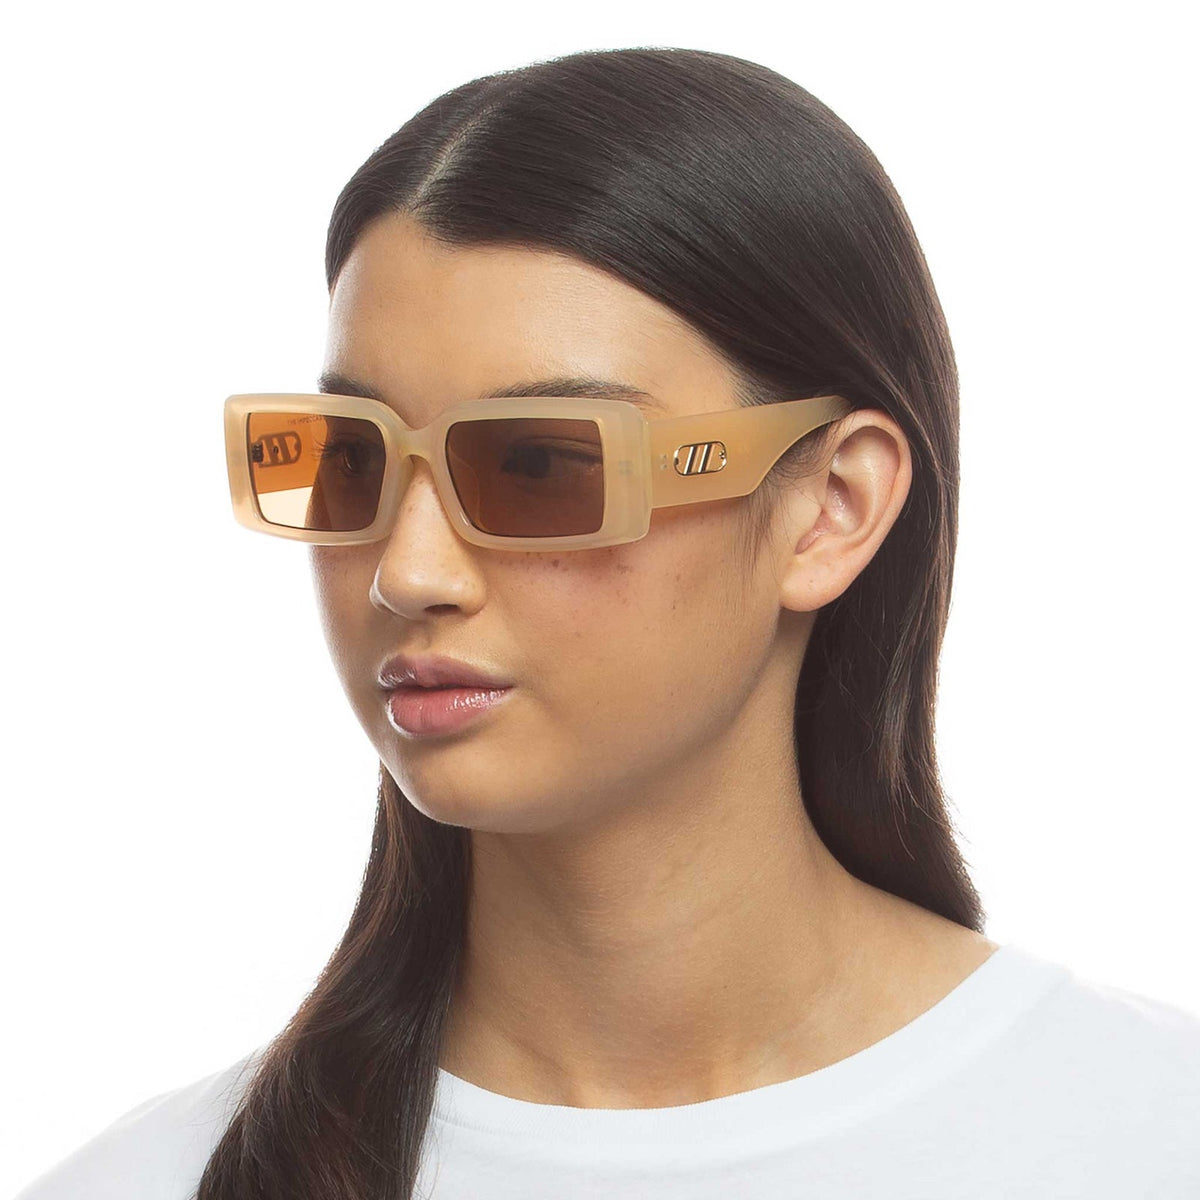 Le Specs - The Impeccable ALT FIT Sunglasses - Linen/Lt. Brown 